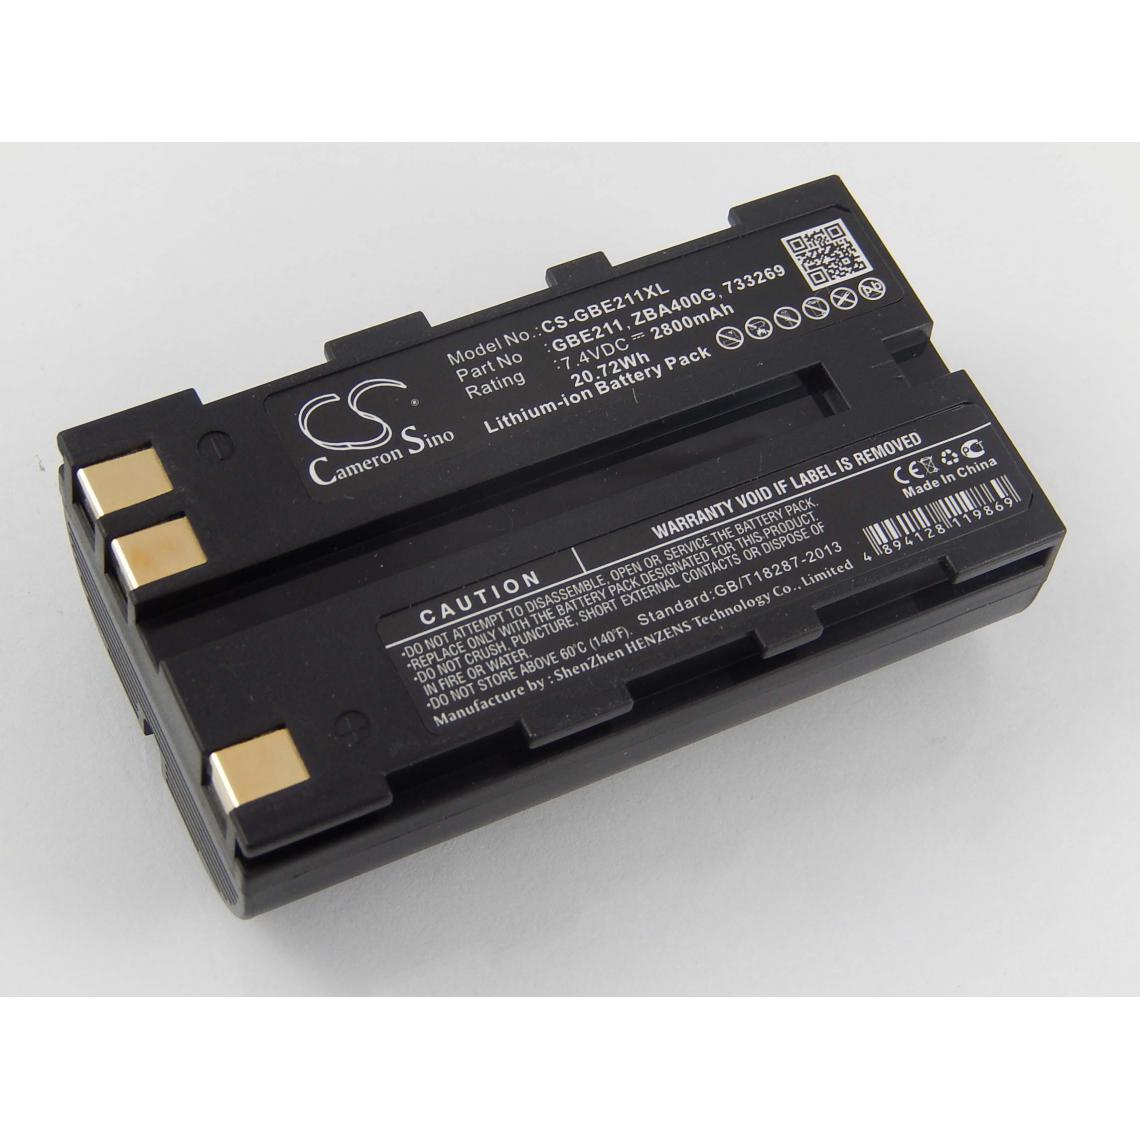 Vhbw - vhbw Batterie compatible avec Leica CS10, CS15, DNA03, DNA10 dispositif de mesure laser, outil de mesure (2800mAh, 7,4V, Li-ion) - Piles rechargeables